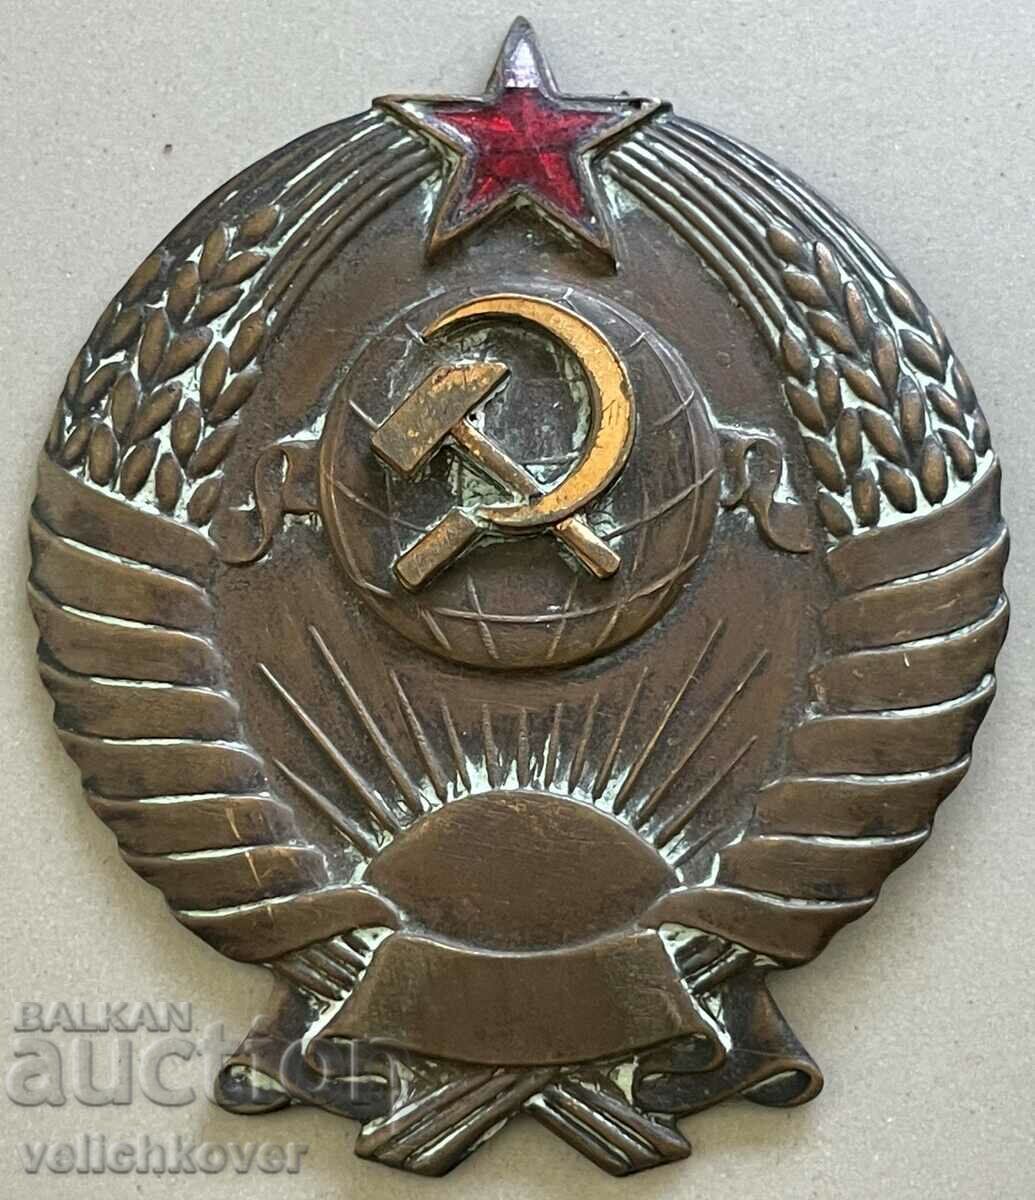 32393 ΕΣΣΔ παλιό εθνόσημο Σοβιετική Ένωση από τον Β' Παγκόσμιο Πόλεμο της δεκαετίας του 1940